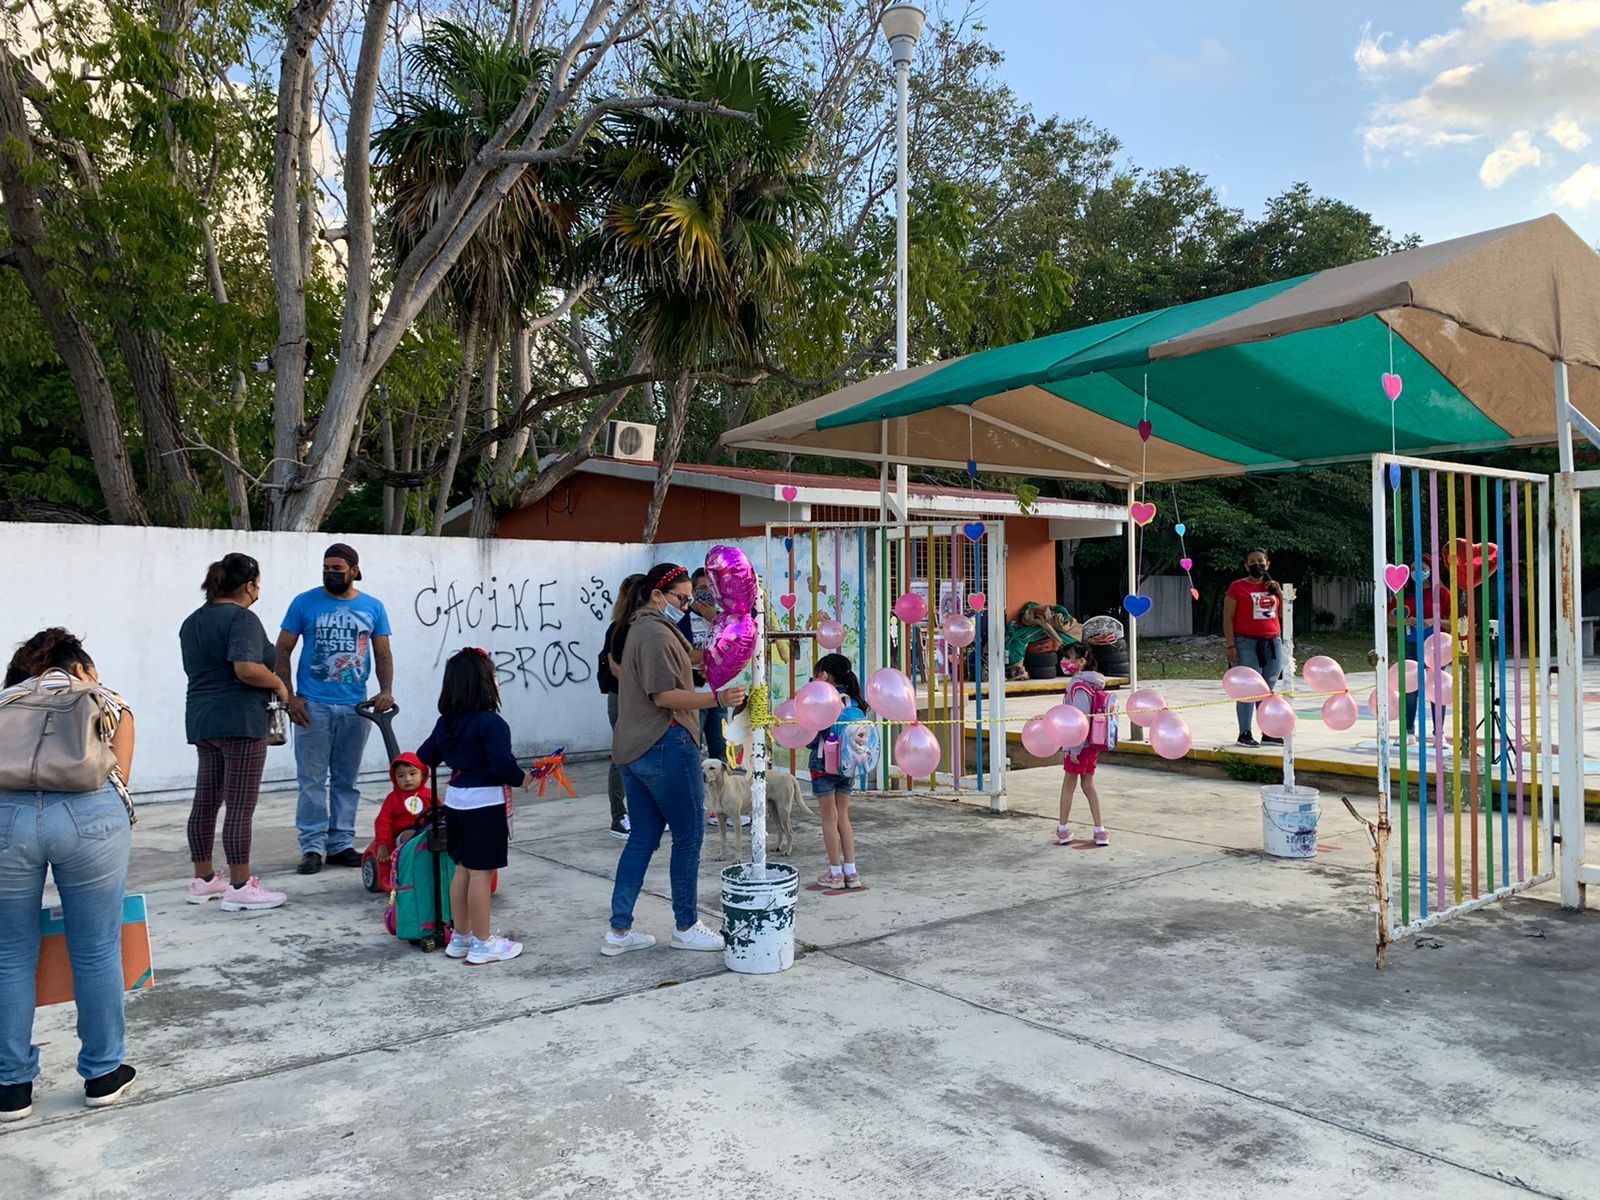 Retoman clases presenciales en escuelas de Cancún: VIDEO